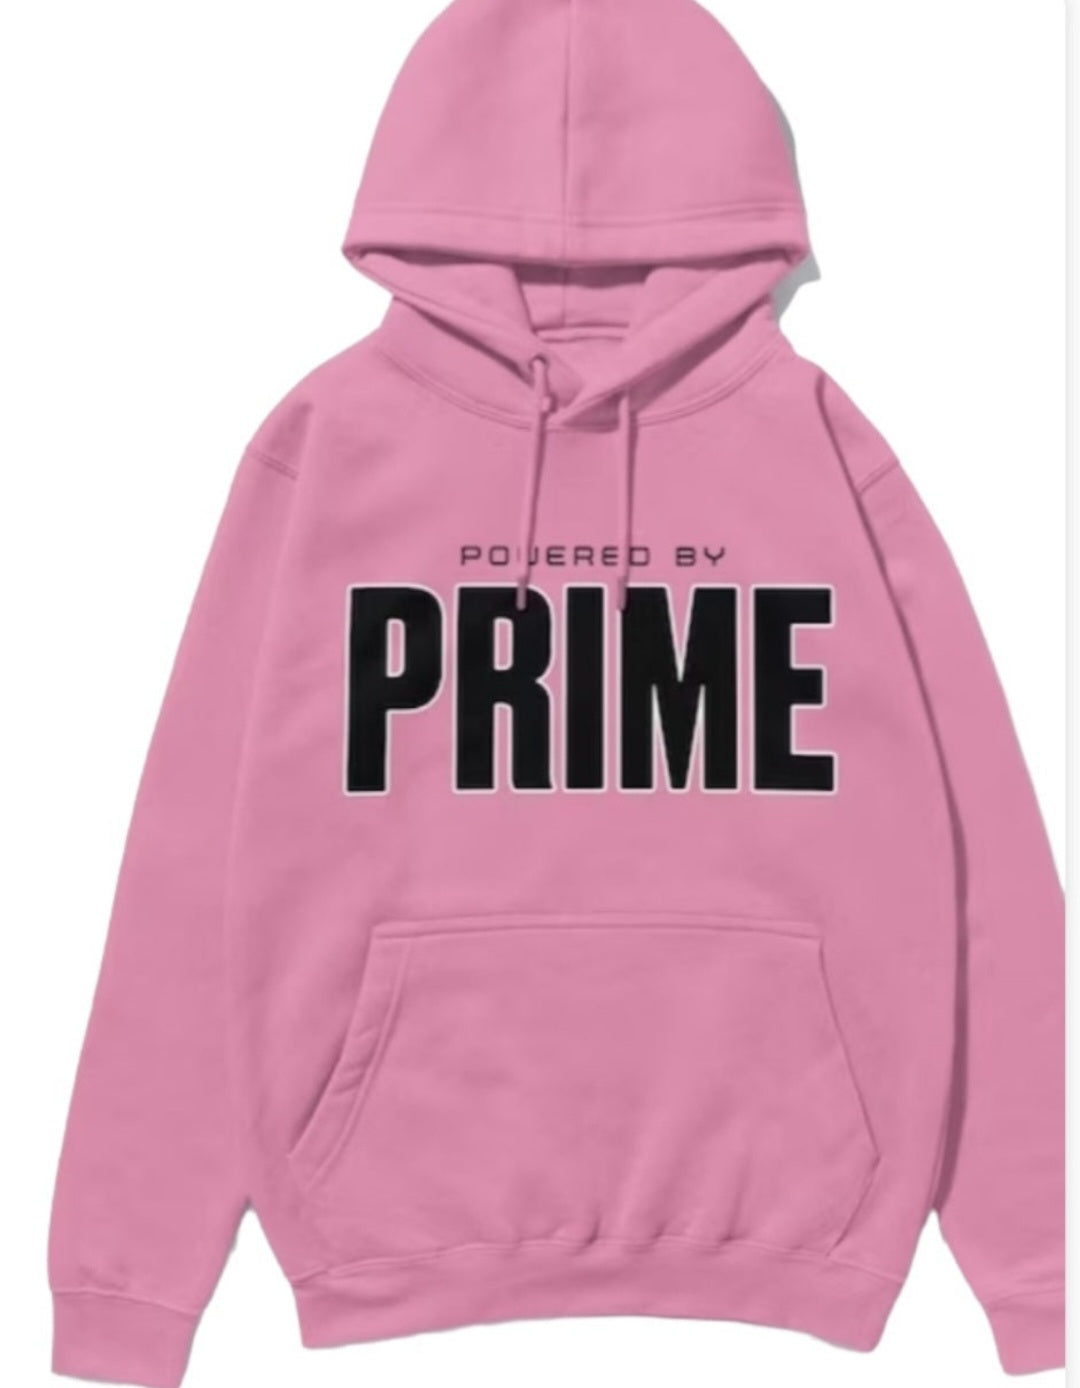 Prime hoodie